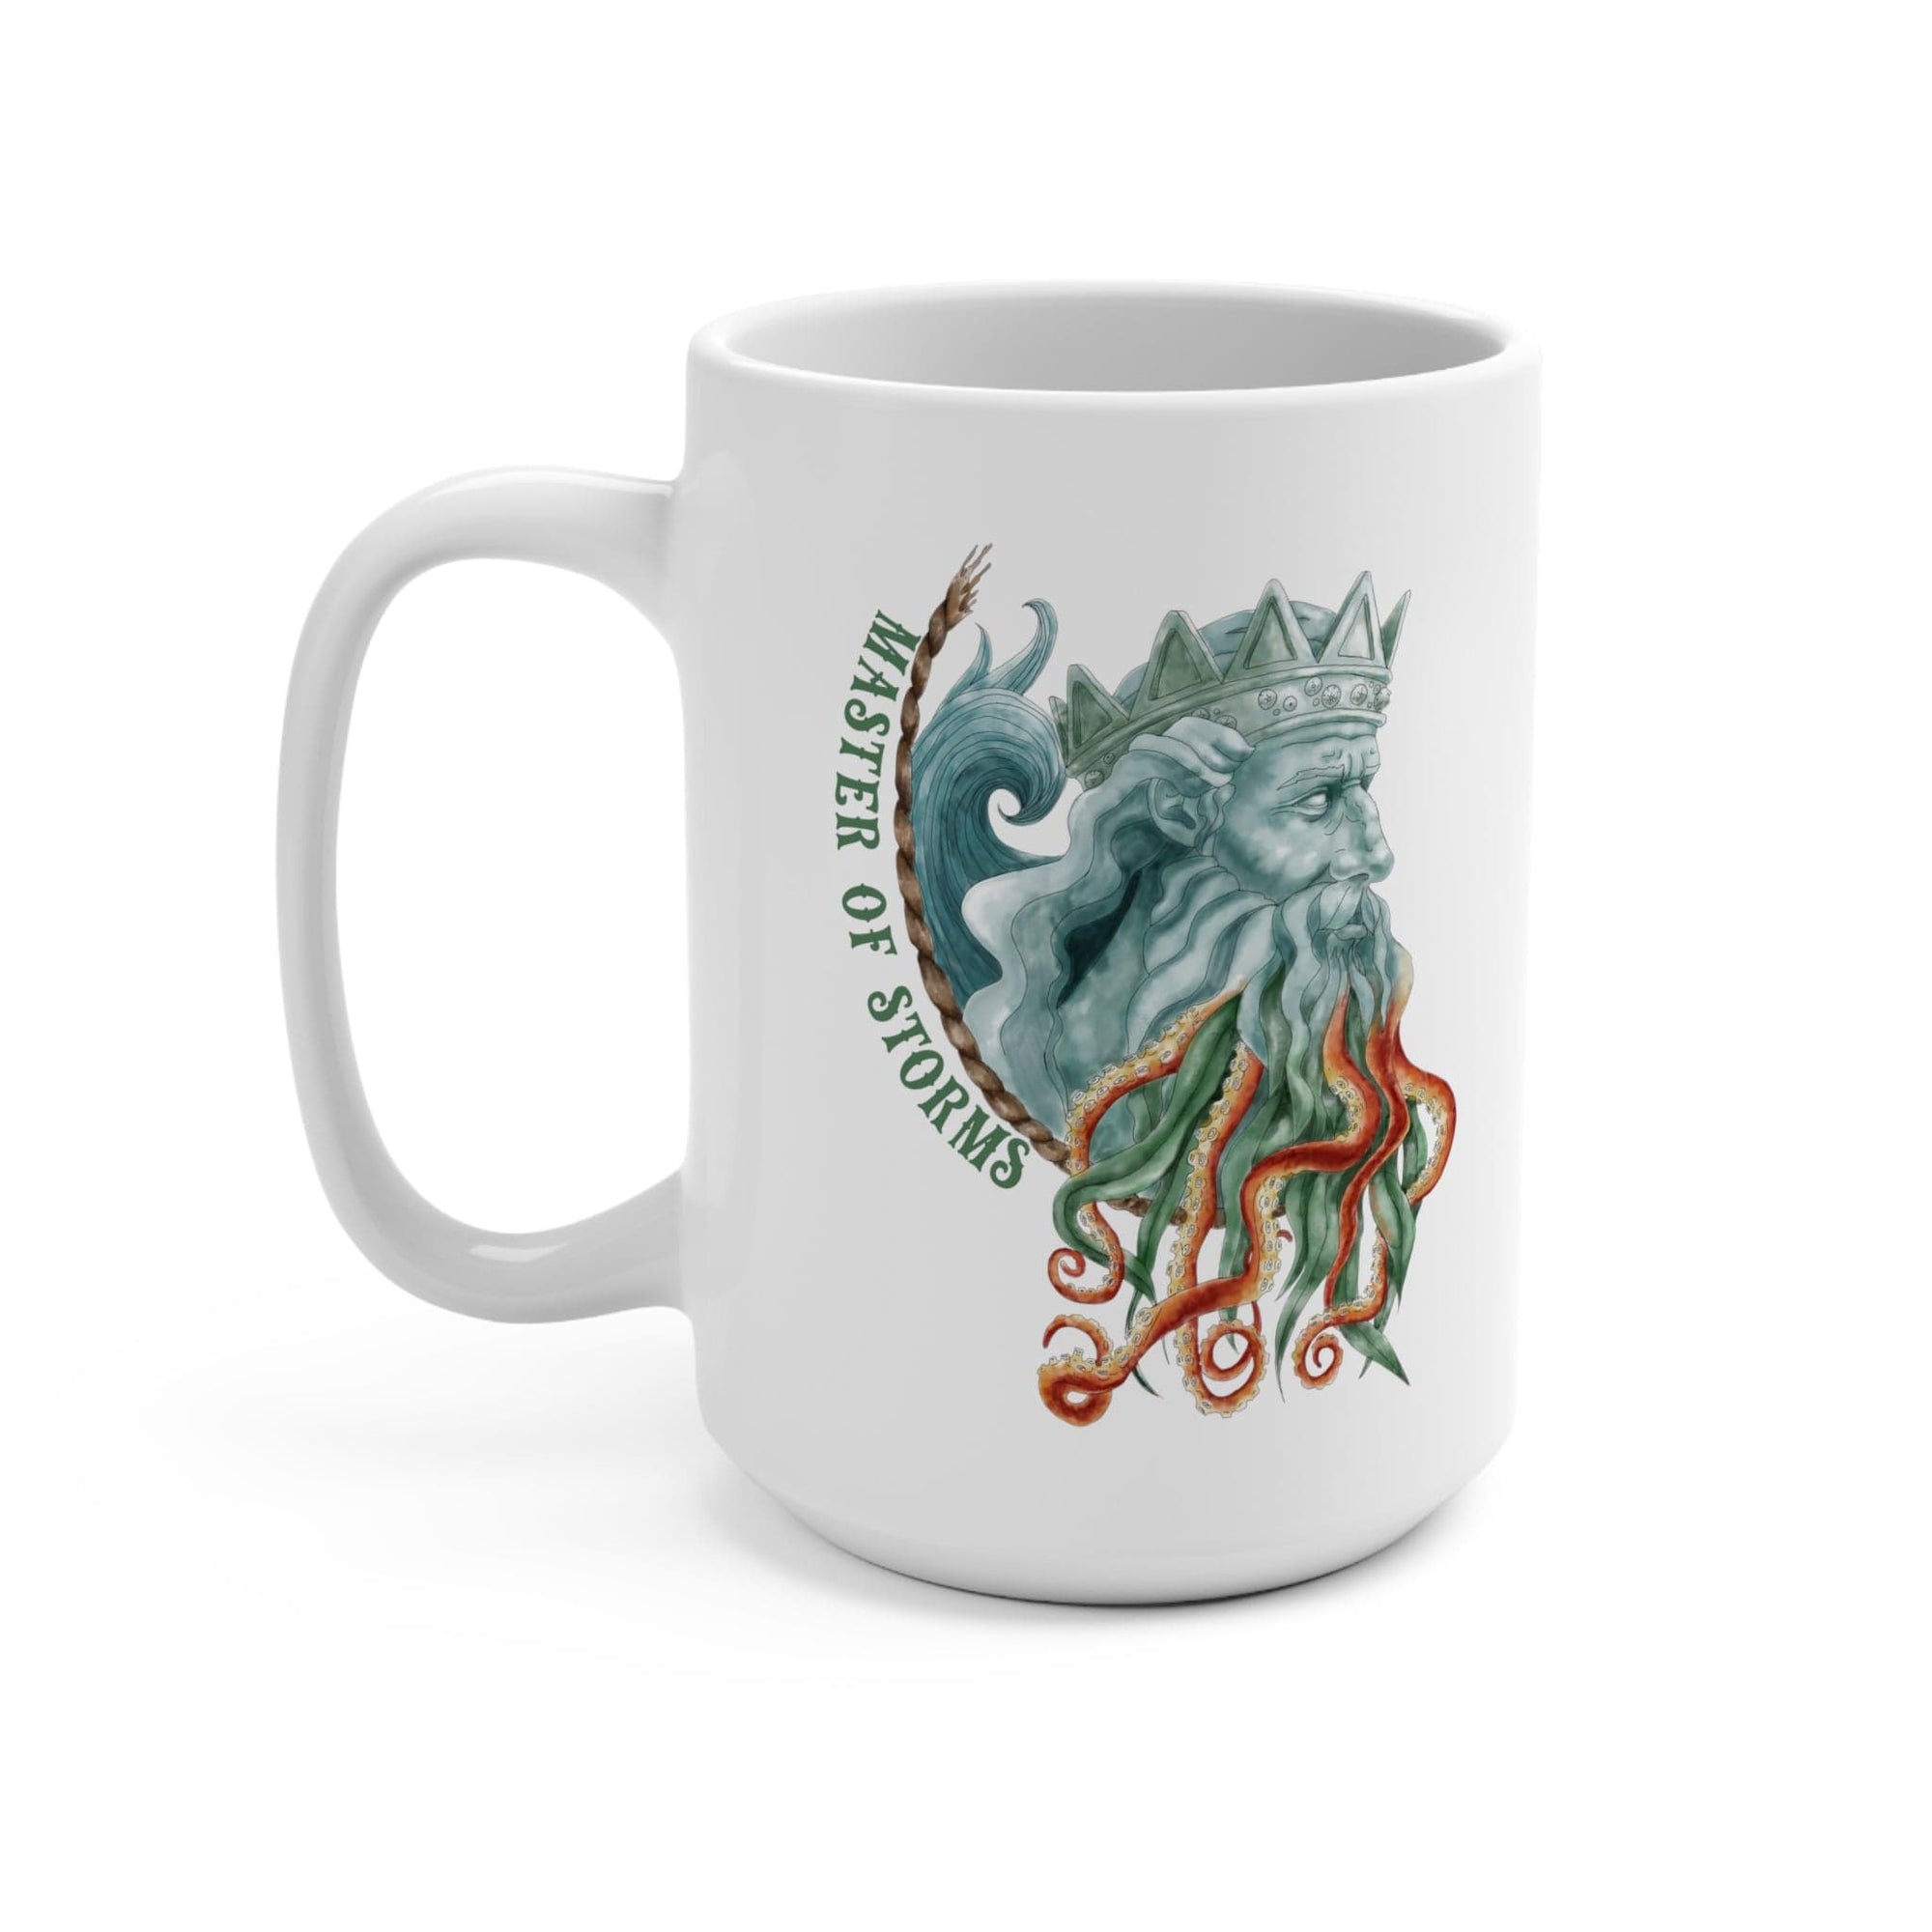 Poseidon Coffee Mug 15oz - Mountains & Mermaids